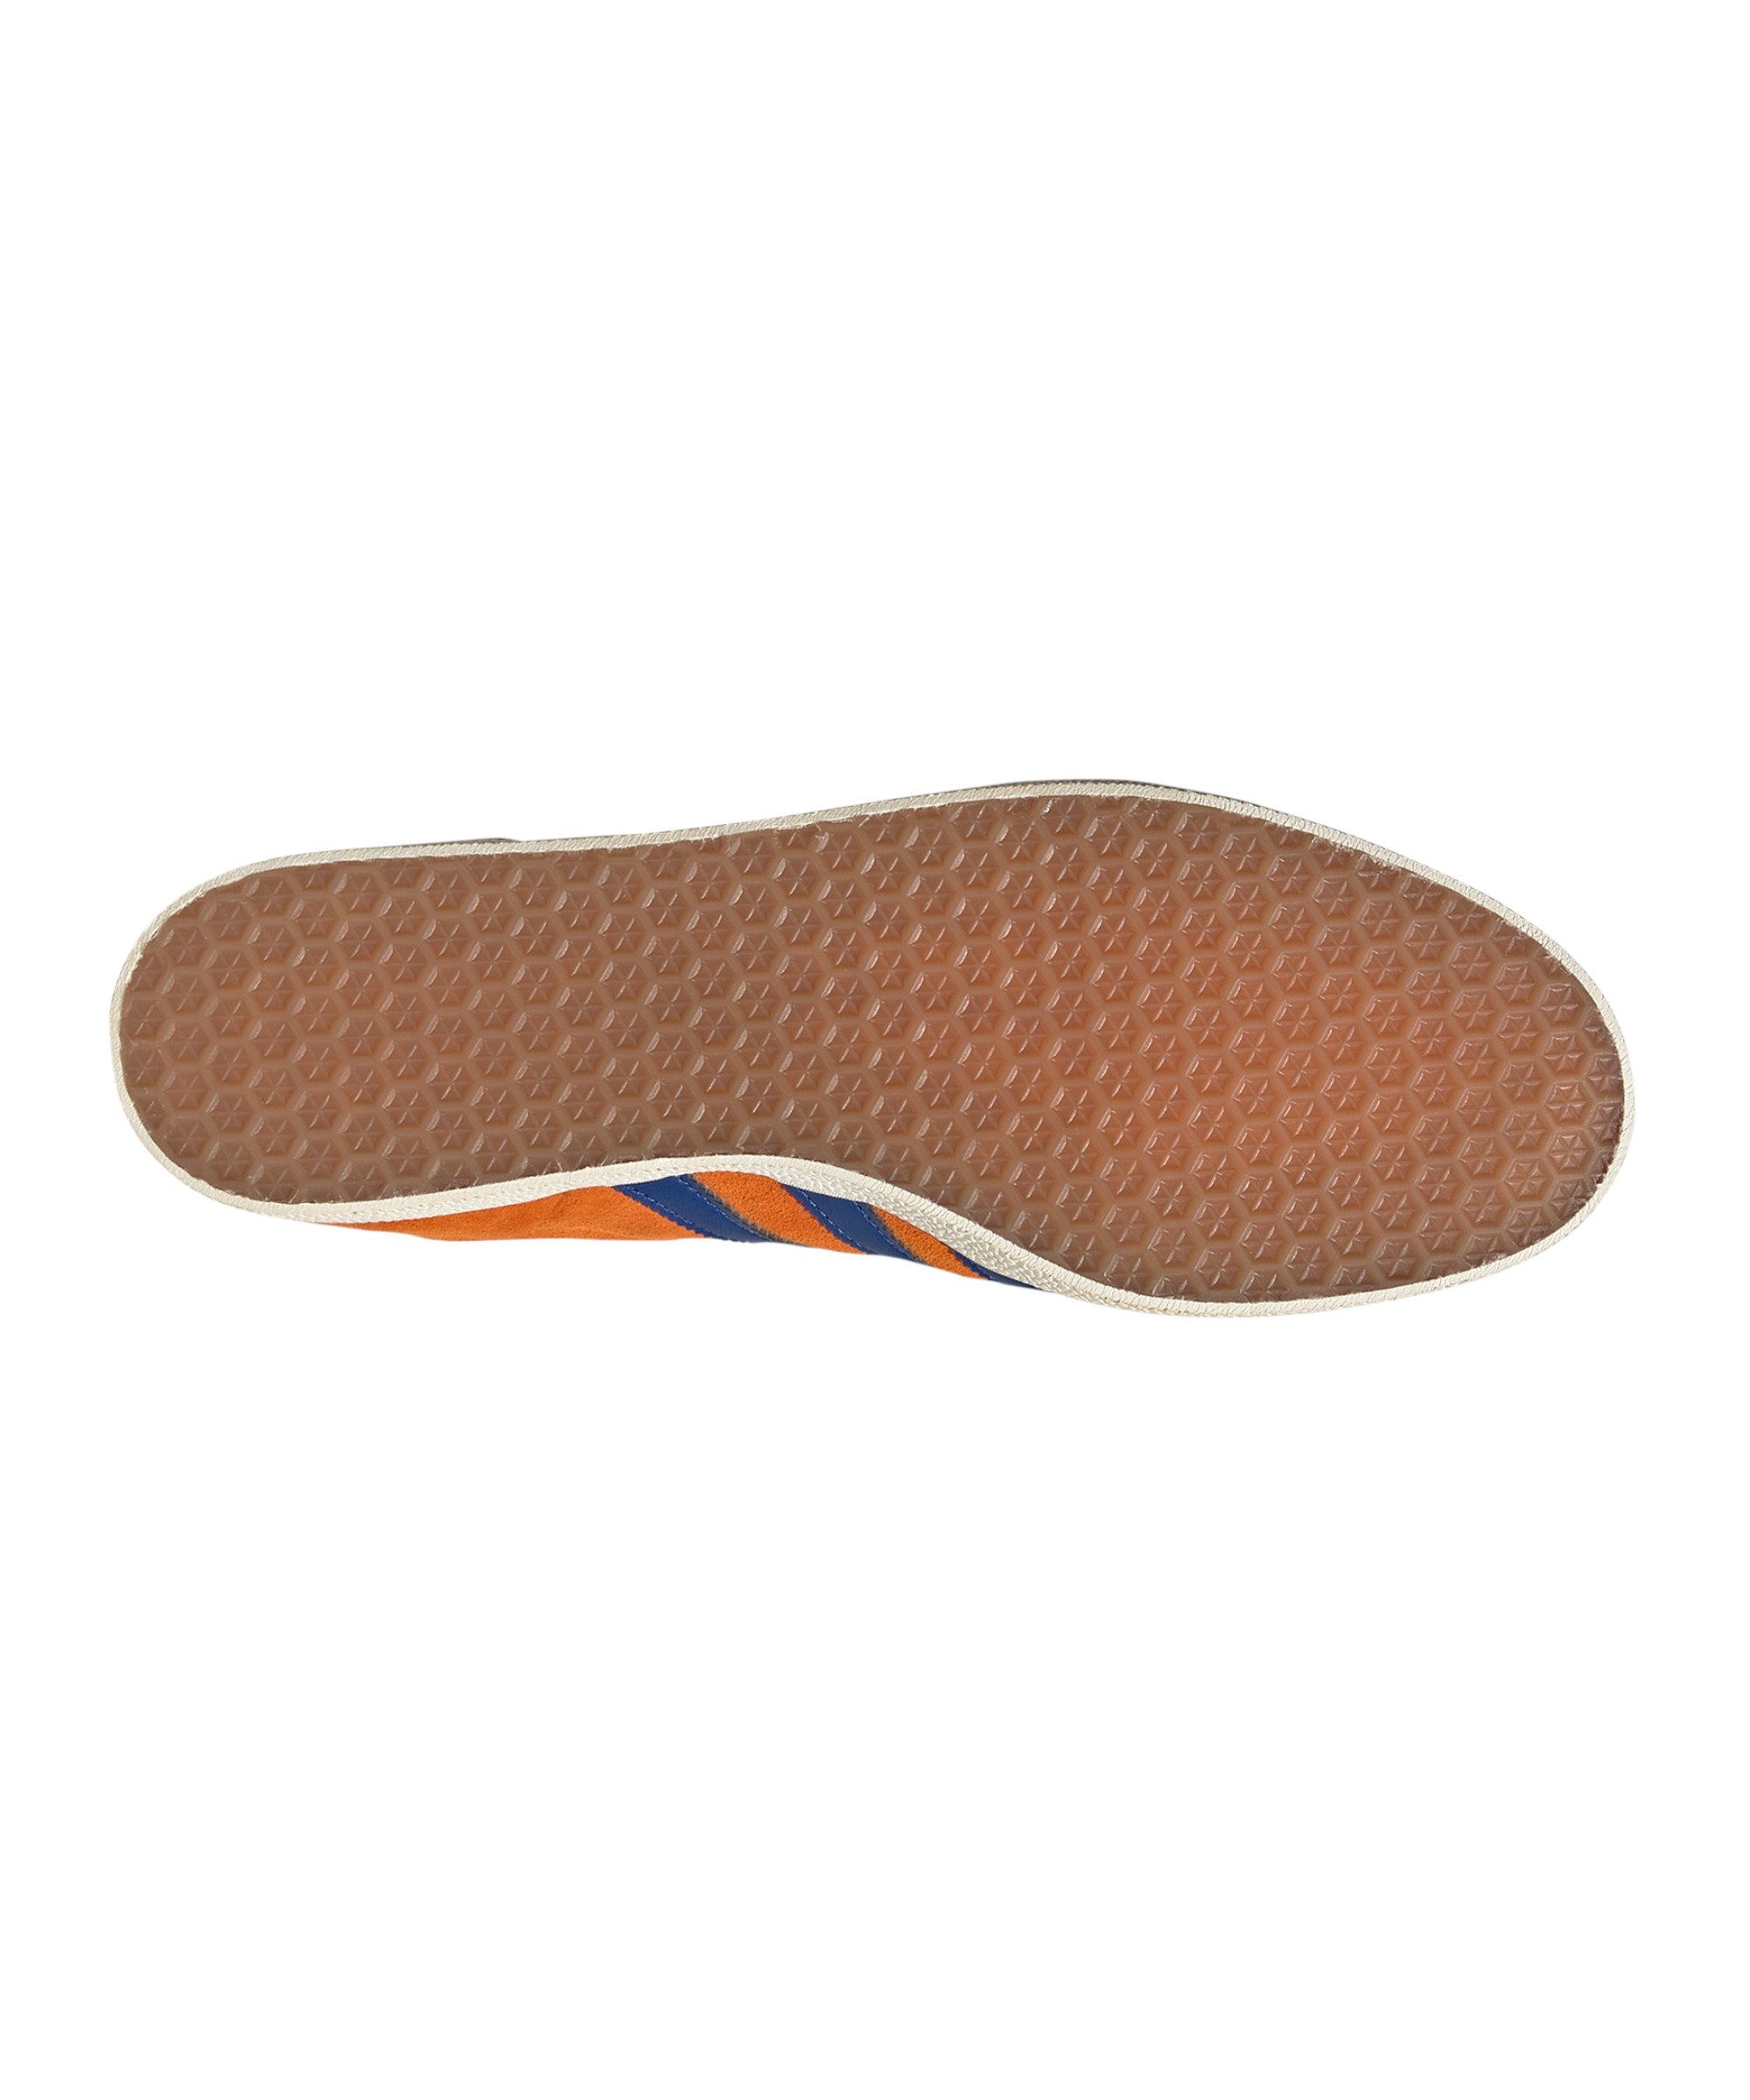 orangeblauweiss adidas Sneaker Gazelle Originals